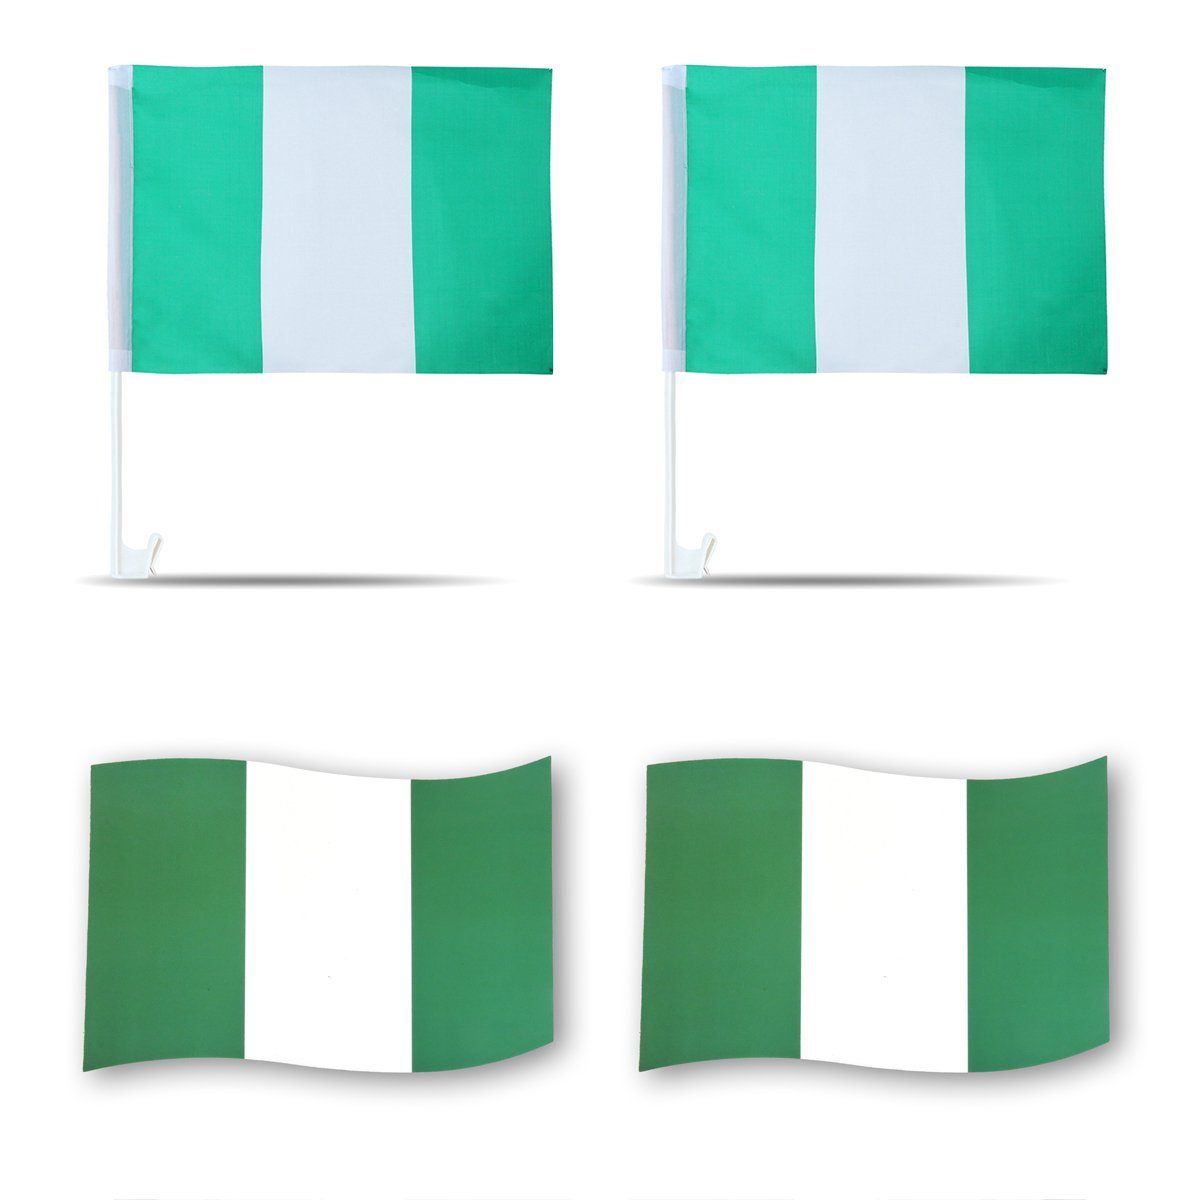 Magnete: Nigeria Fanpaket Fußball Autofahnen, Originelli Sonia "Nigerien" 3D-Effekt Fahne Flaggen Fahren Magnet